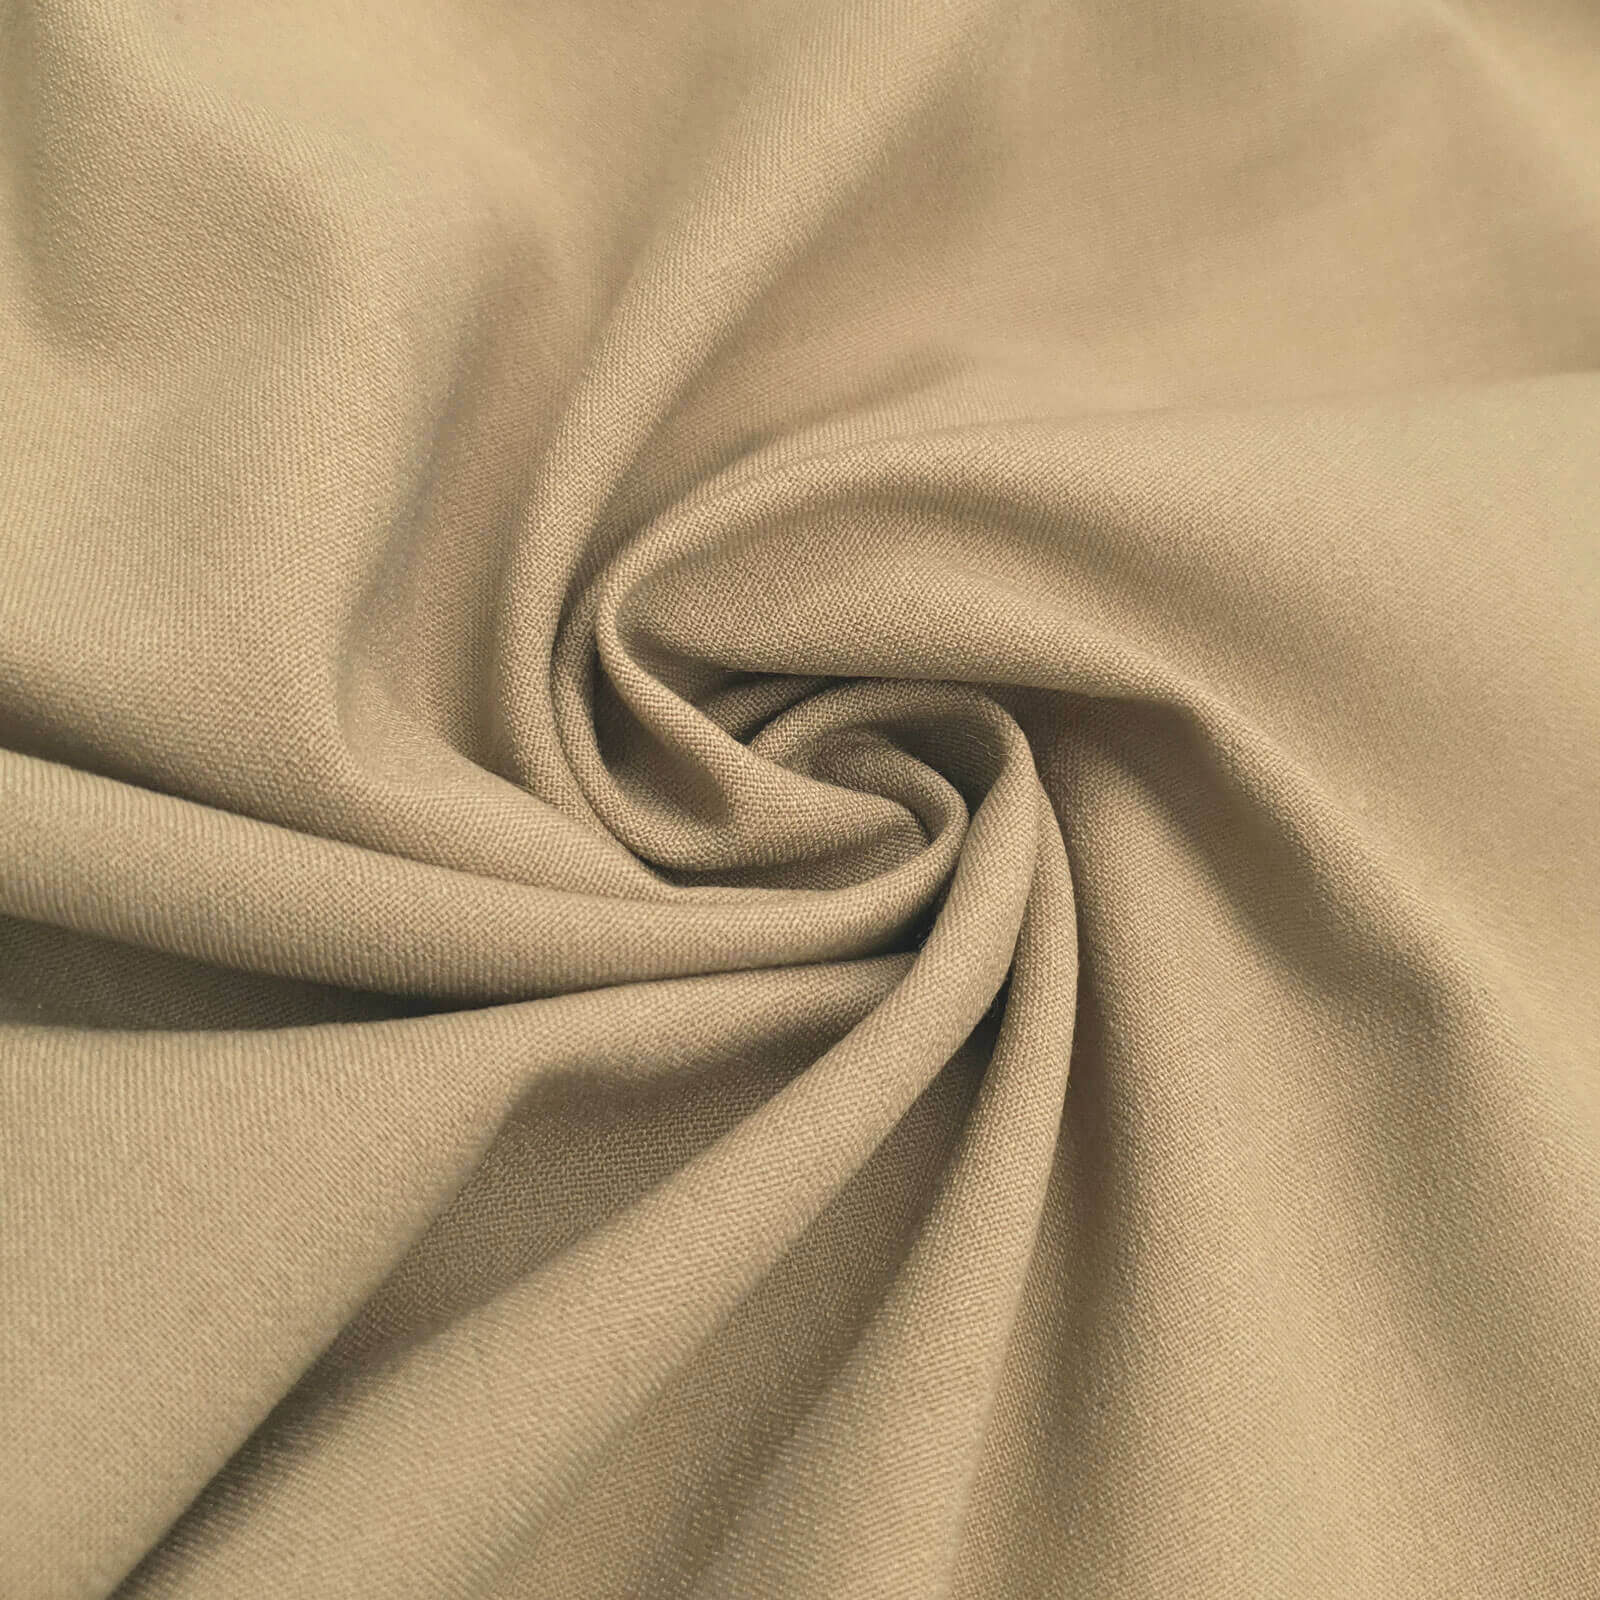 Tecido de lã – com elastano (caqui)